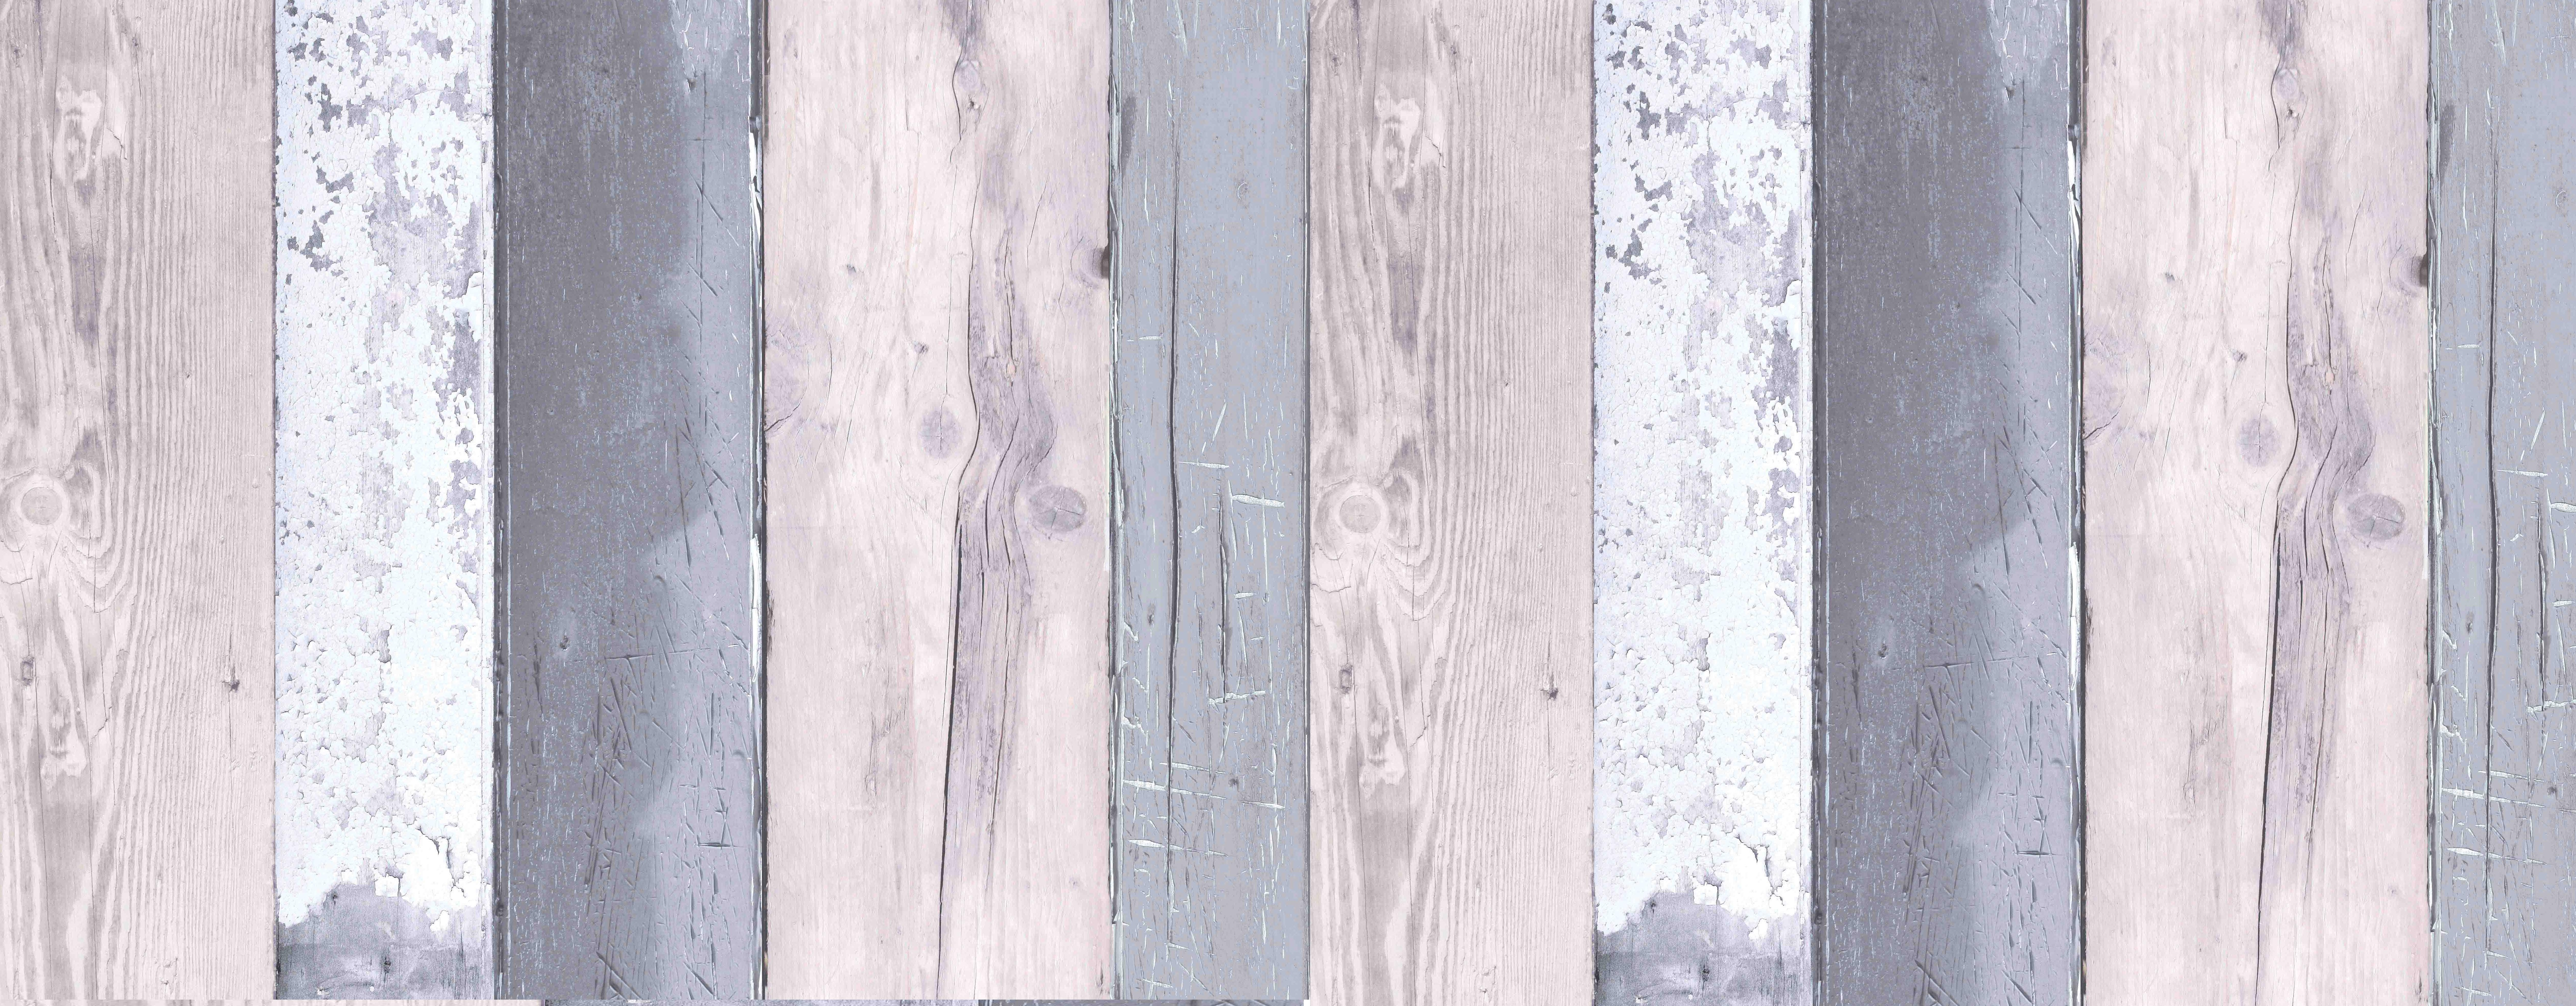 grey wood background <3 - Imgur